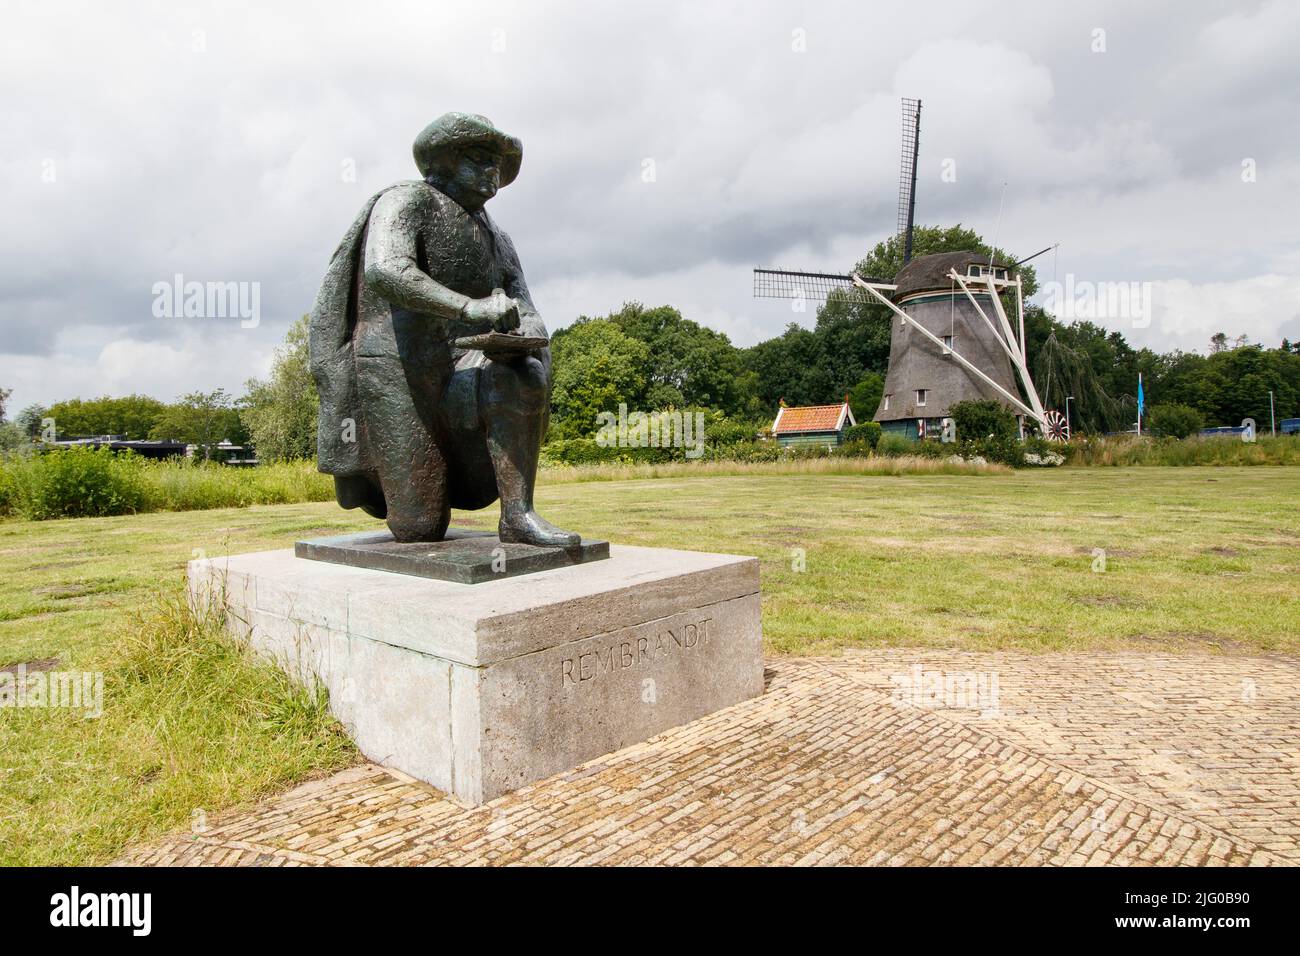 La estatua de Rembrandt en la zona sur de Ámsterdam, donde fluye el río Amstel hacia el sur. El famoso pintor Rembrandt tenía una casa junto al río y se cree que muchos de inspiración para sus pinturas comenzaron aquí. Foto de stock